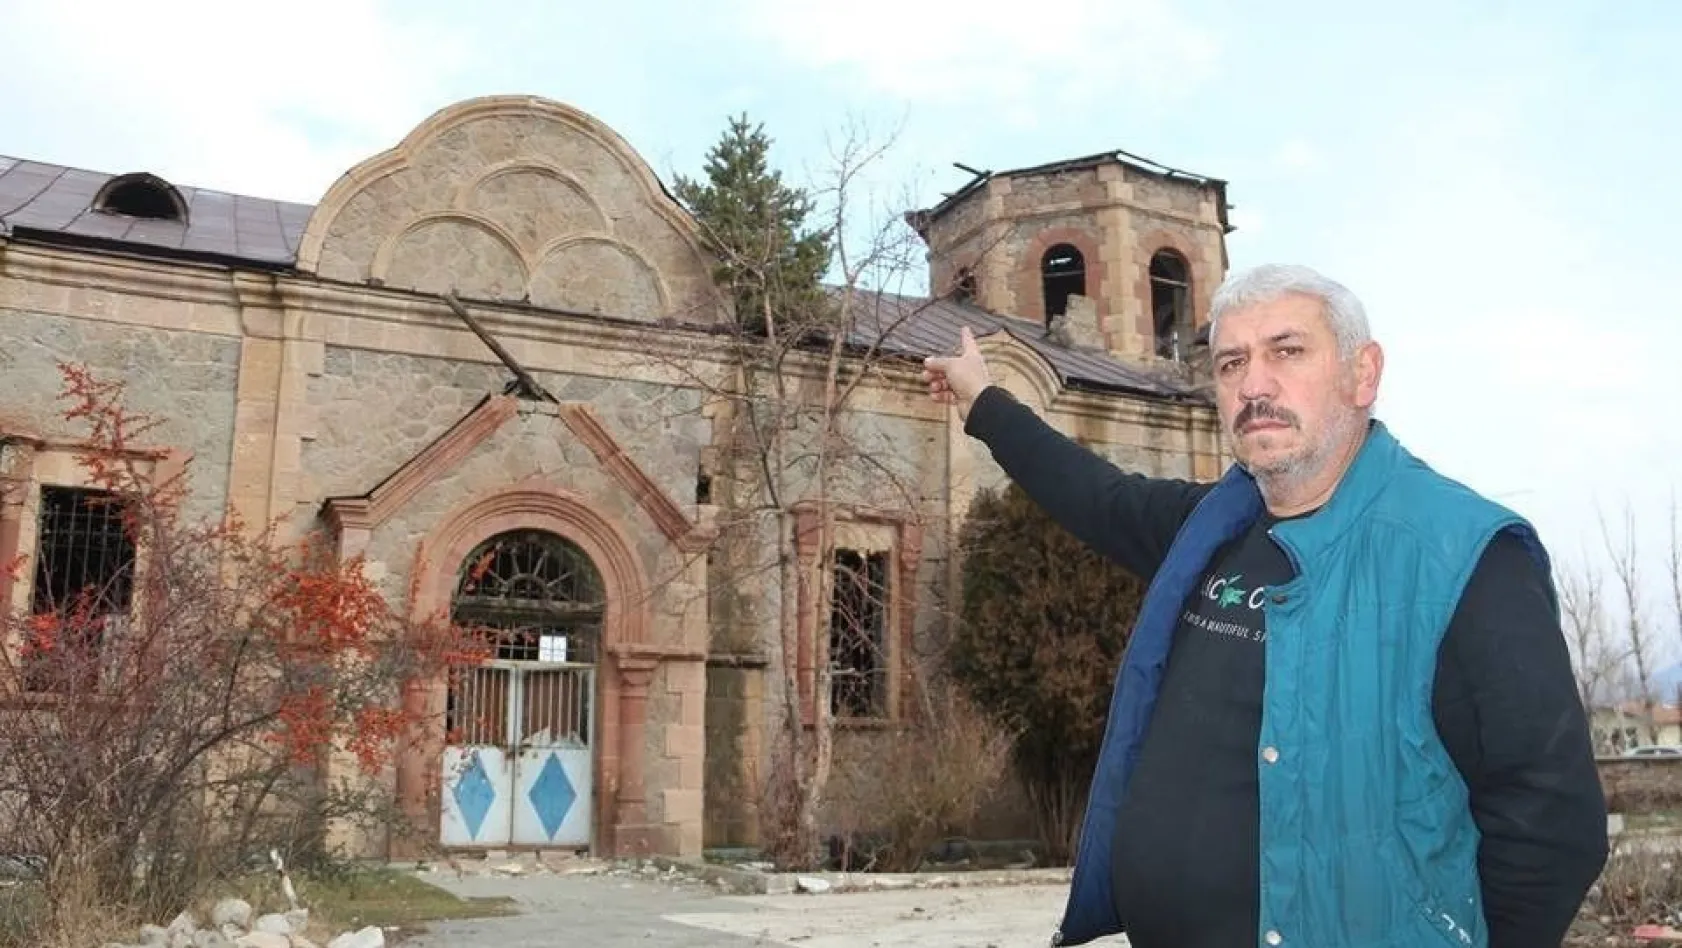 Rus Ortodoks Kilisesi'nin çatısında çam ağacı çıktı
